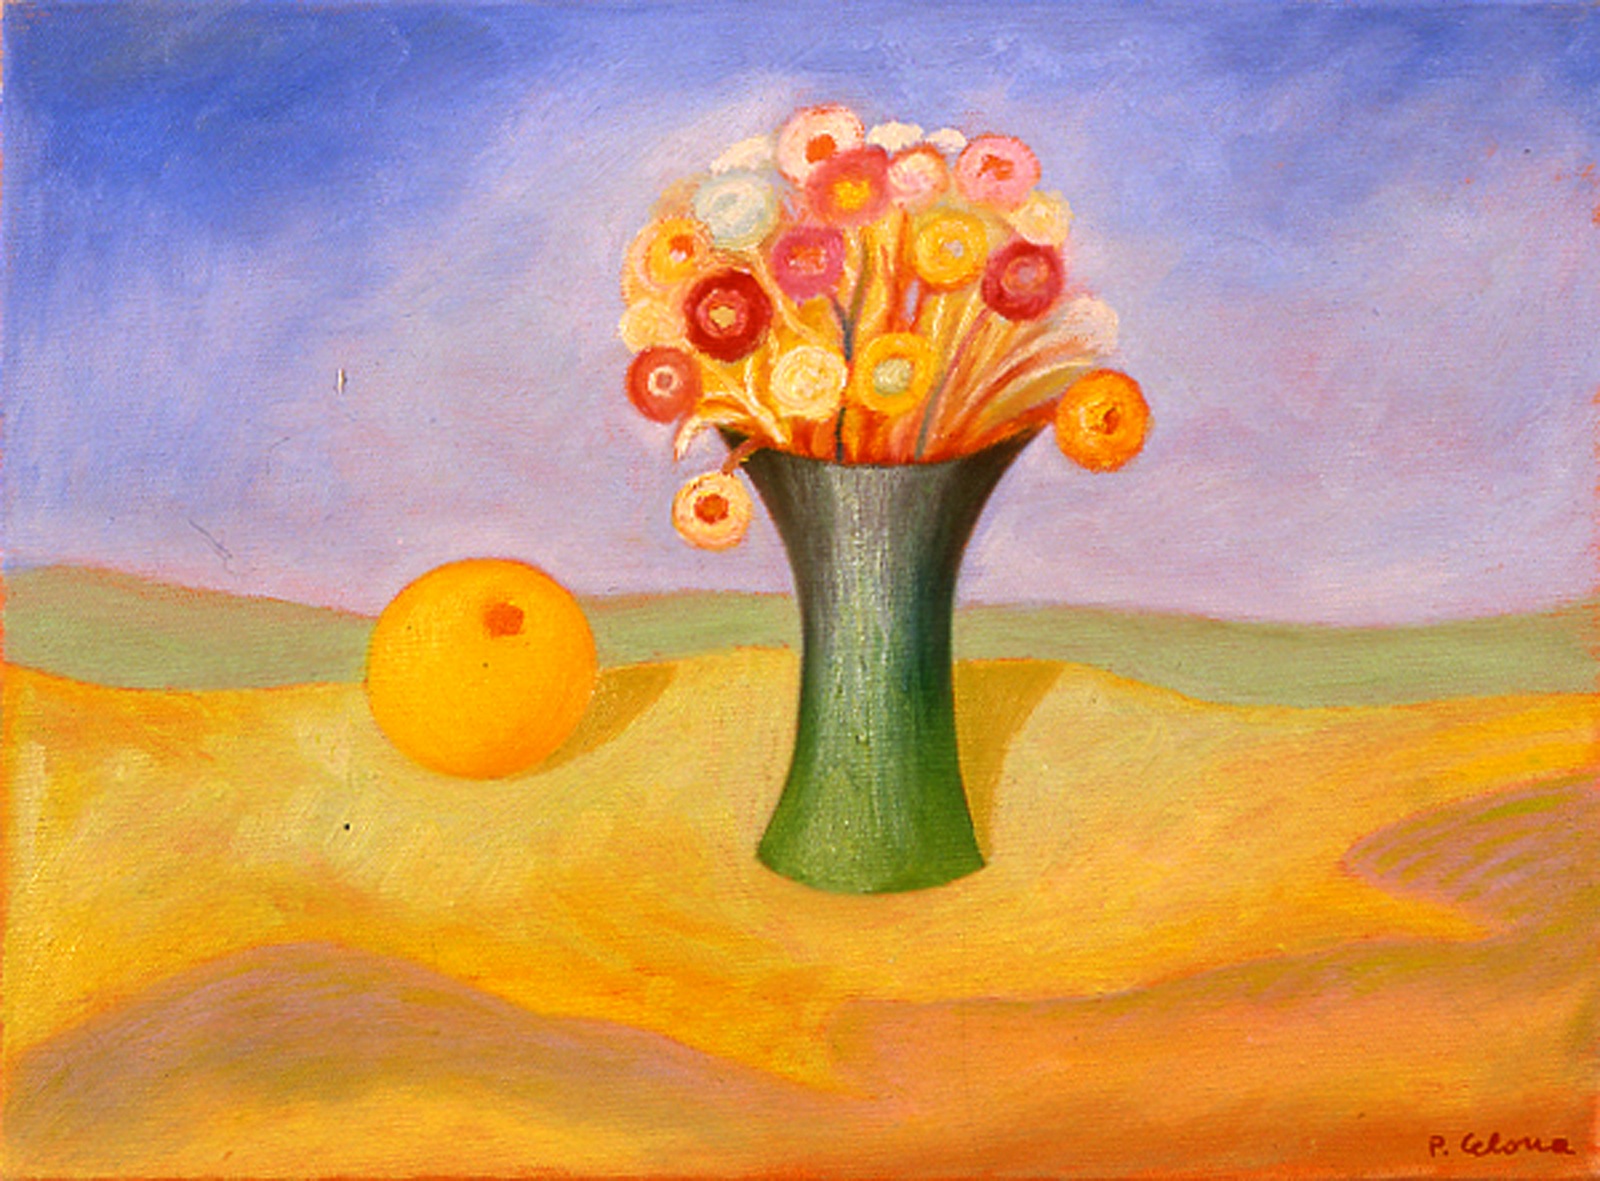 Vaso e fiori con arancia, ca. 1995
Olio su tela 50 x 60 cm,
Collezione privata